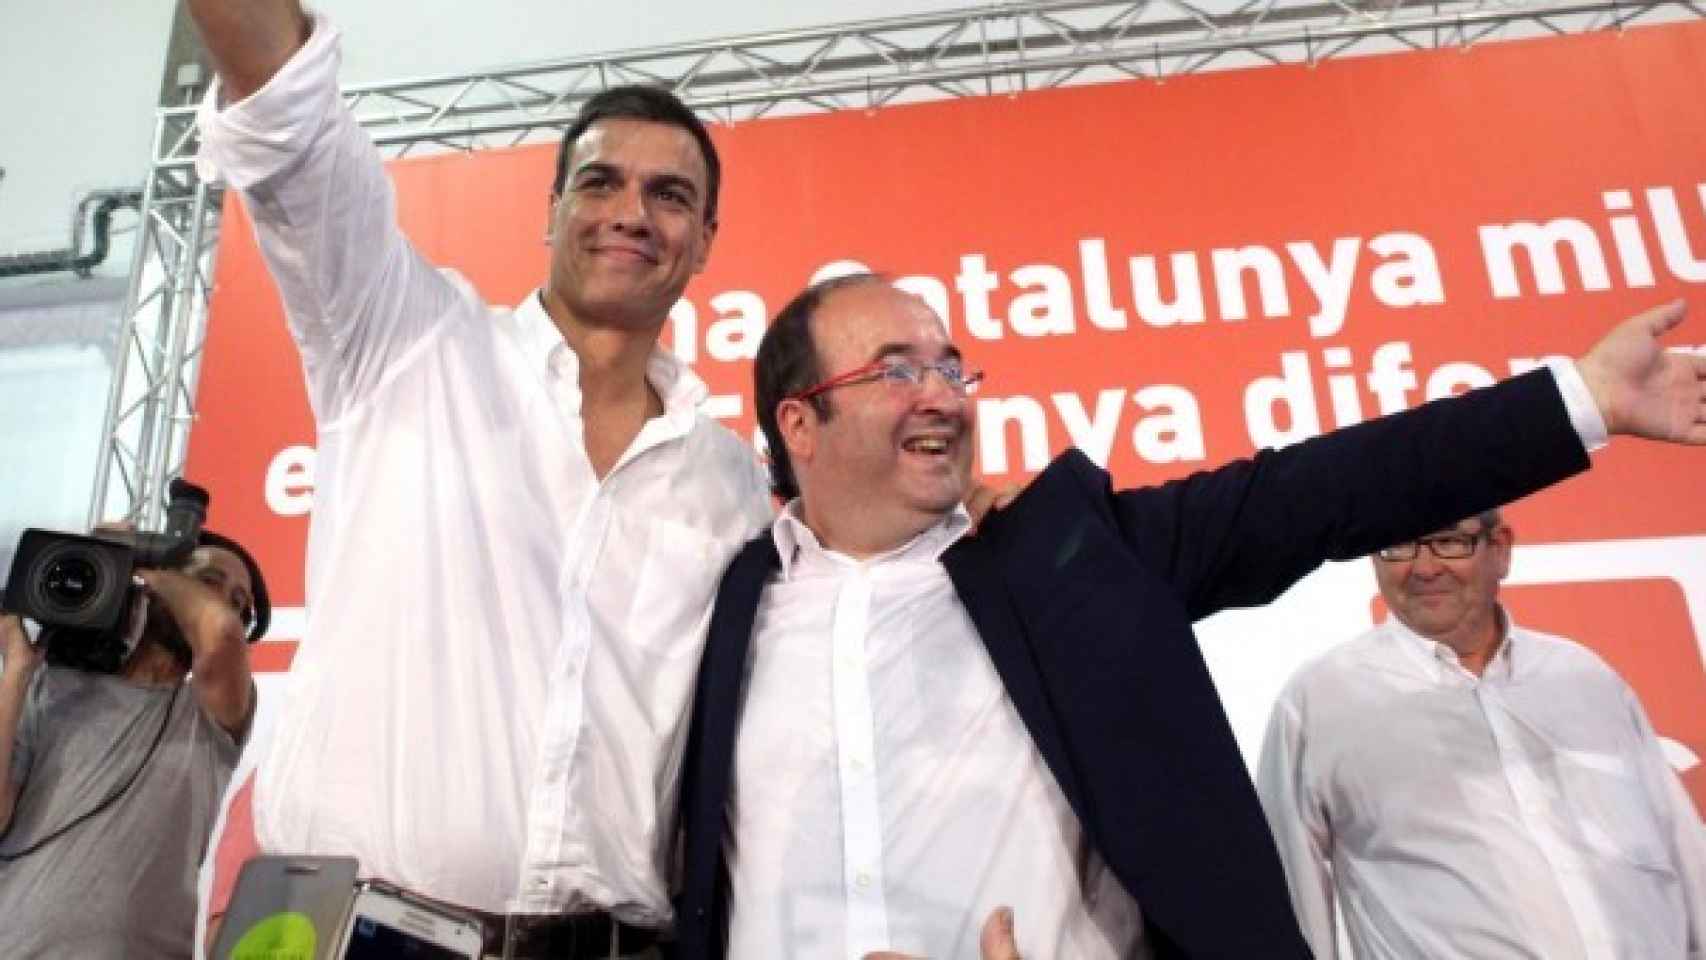 Pedro Sánchez y Miquel Iceta durante un acto de campaña en 2015.